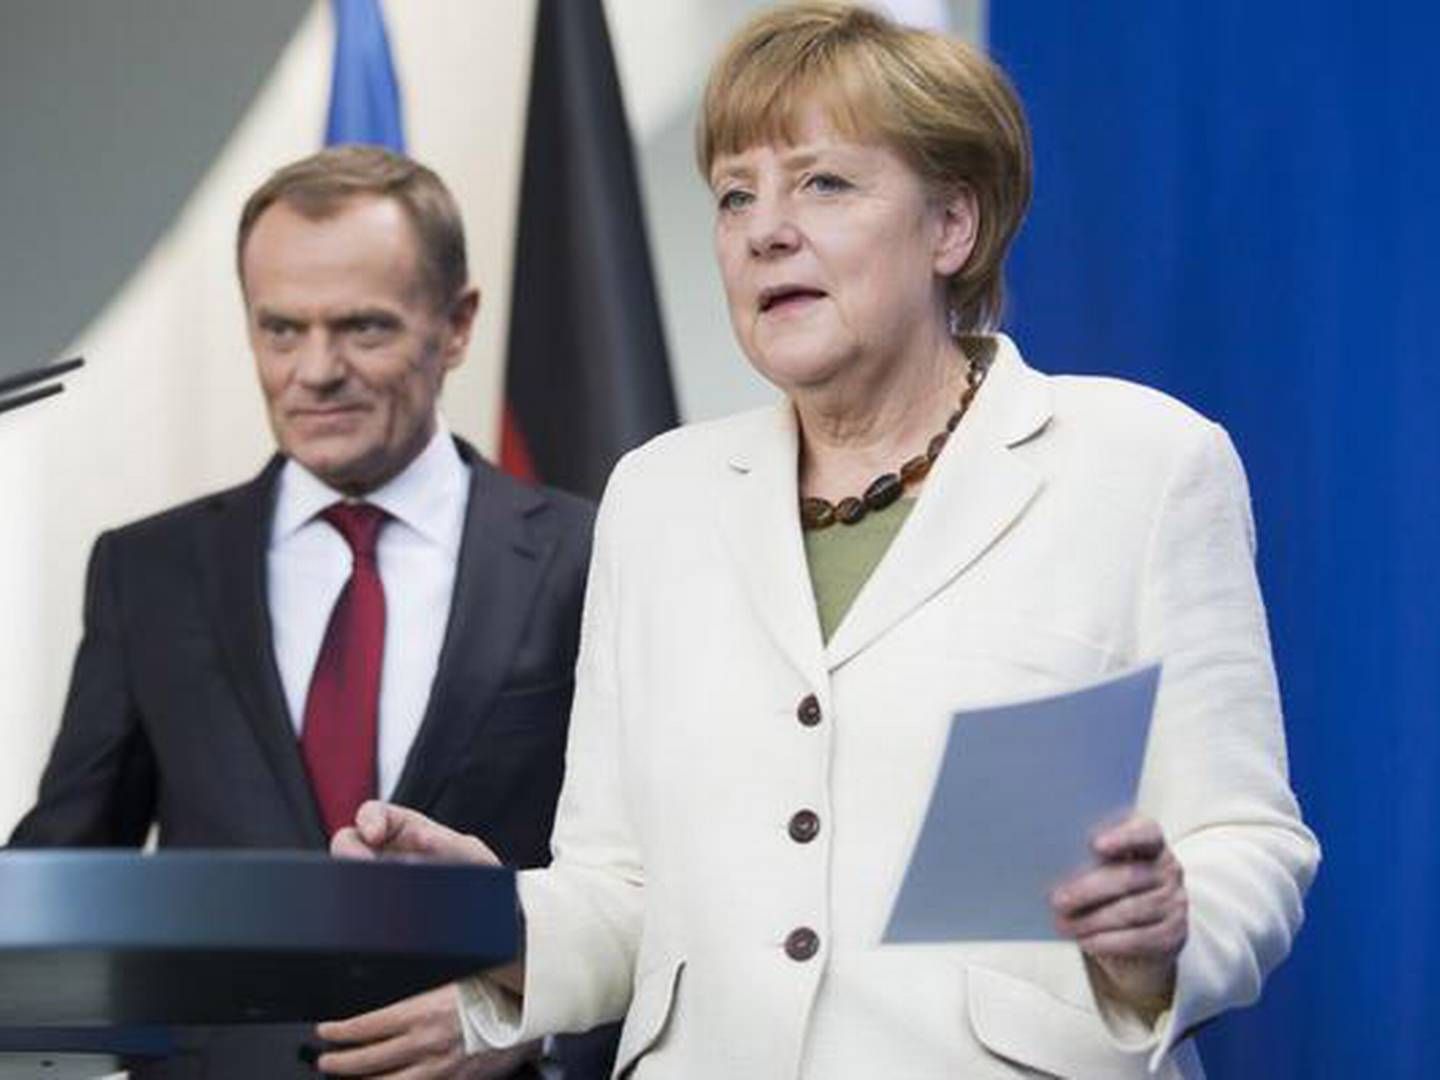 Det er Merkel, der bestemmer EU's energikurs, selvom formanden er polak | Foto: Gero Breloer/AP